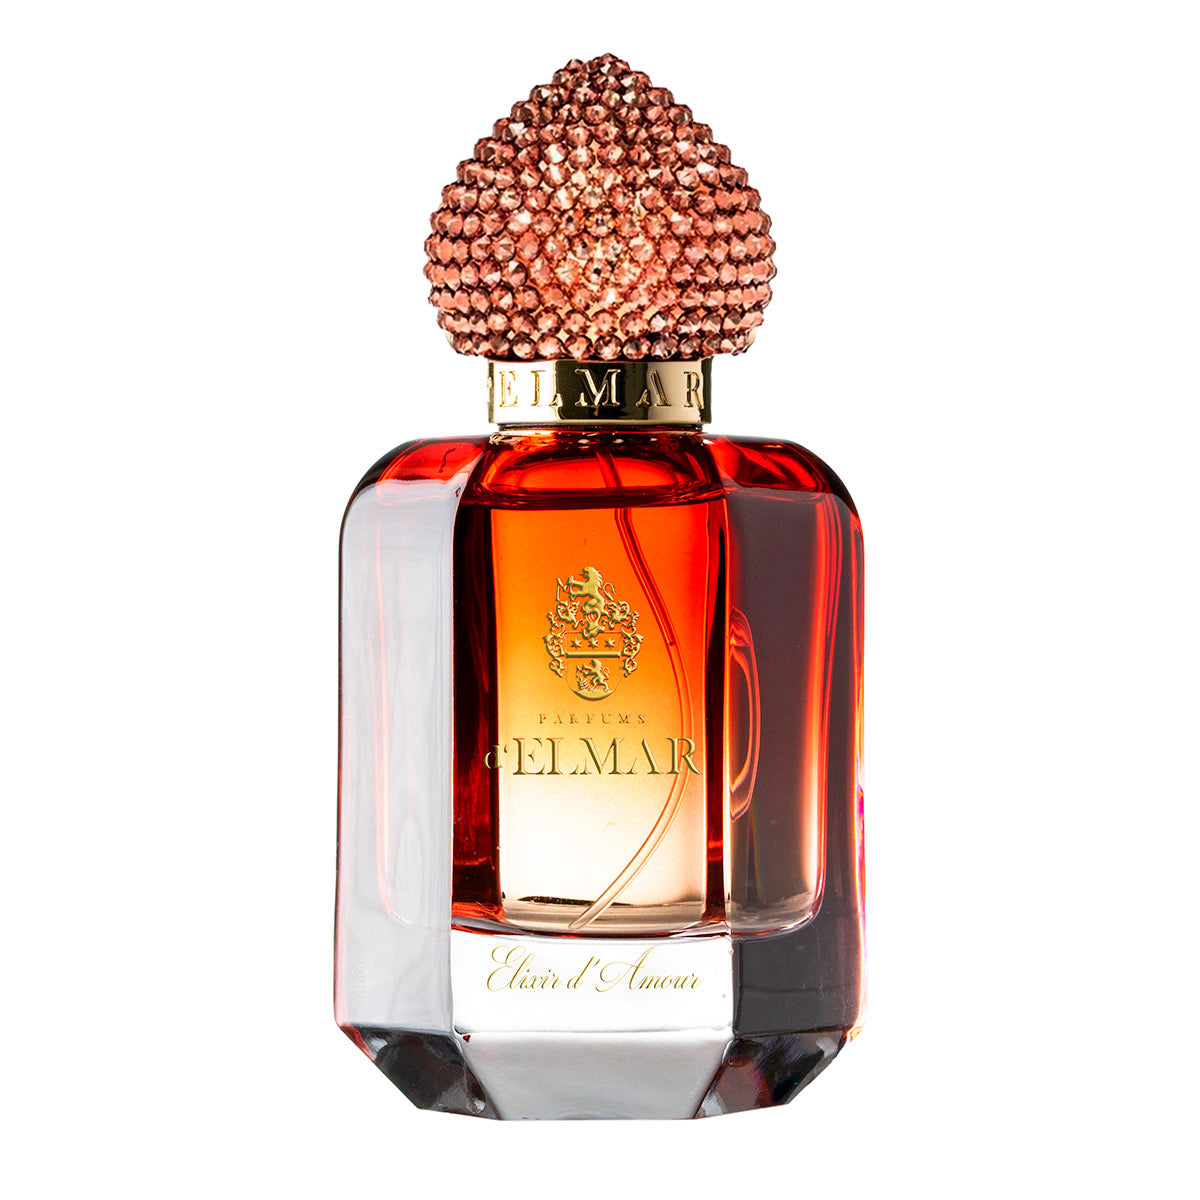 Elixir d'Amour (Swarovski) - Parfums d'Elmar - EP 60ml